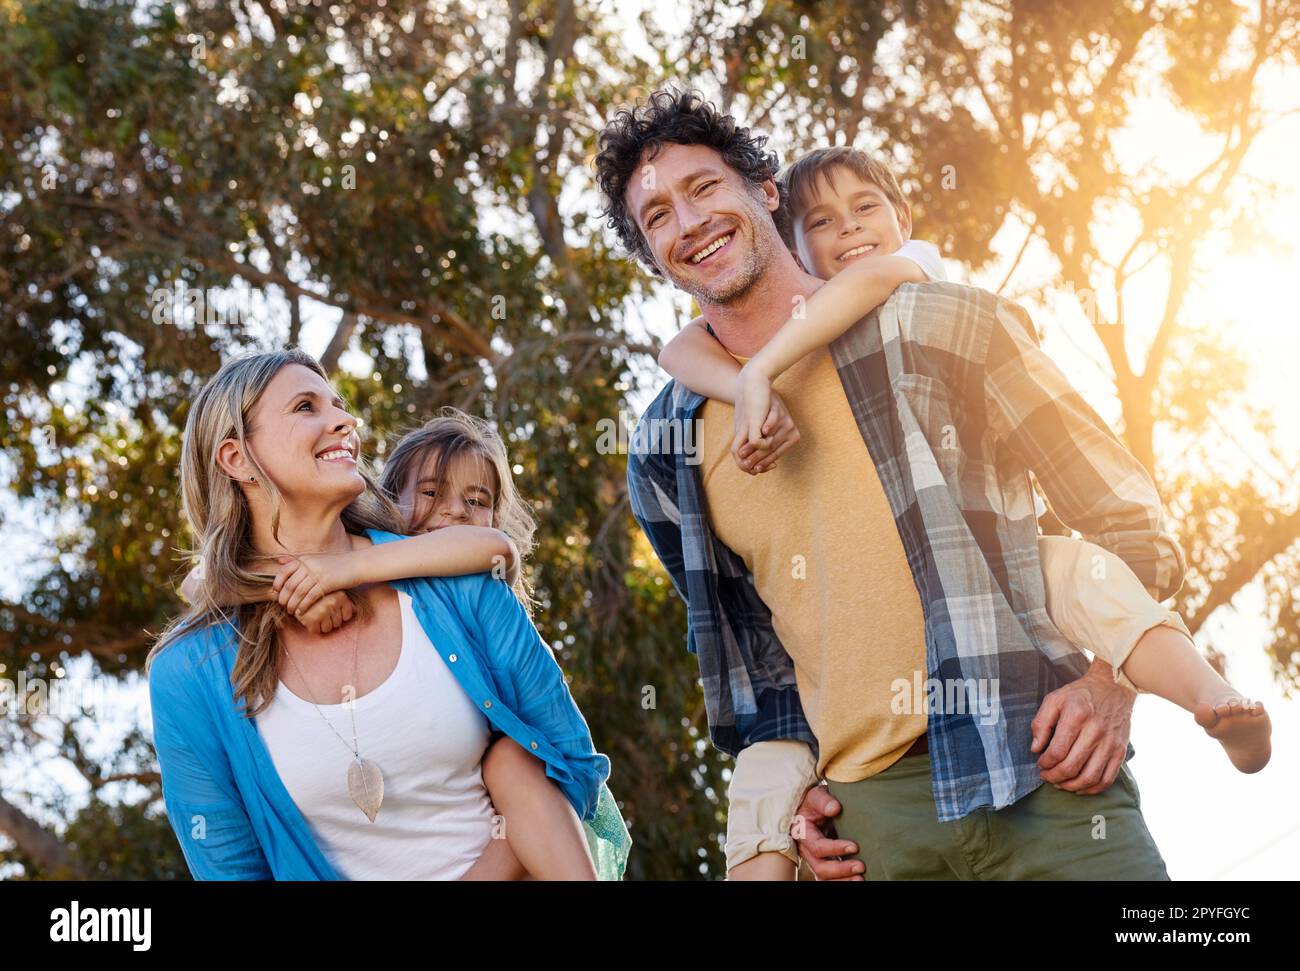 Ich liebe sie mehr, als Worte erklären können. Porträt einer glücklichen Familie, die Zeit zusammen im Freien verbringt. Stockfoto